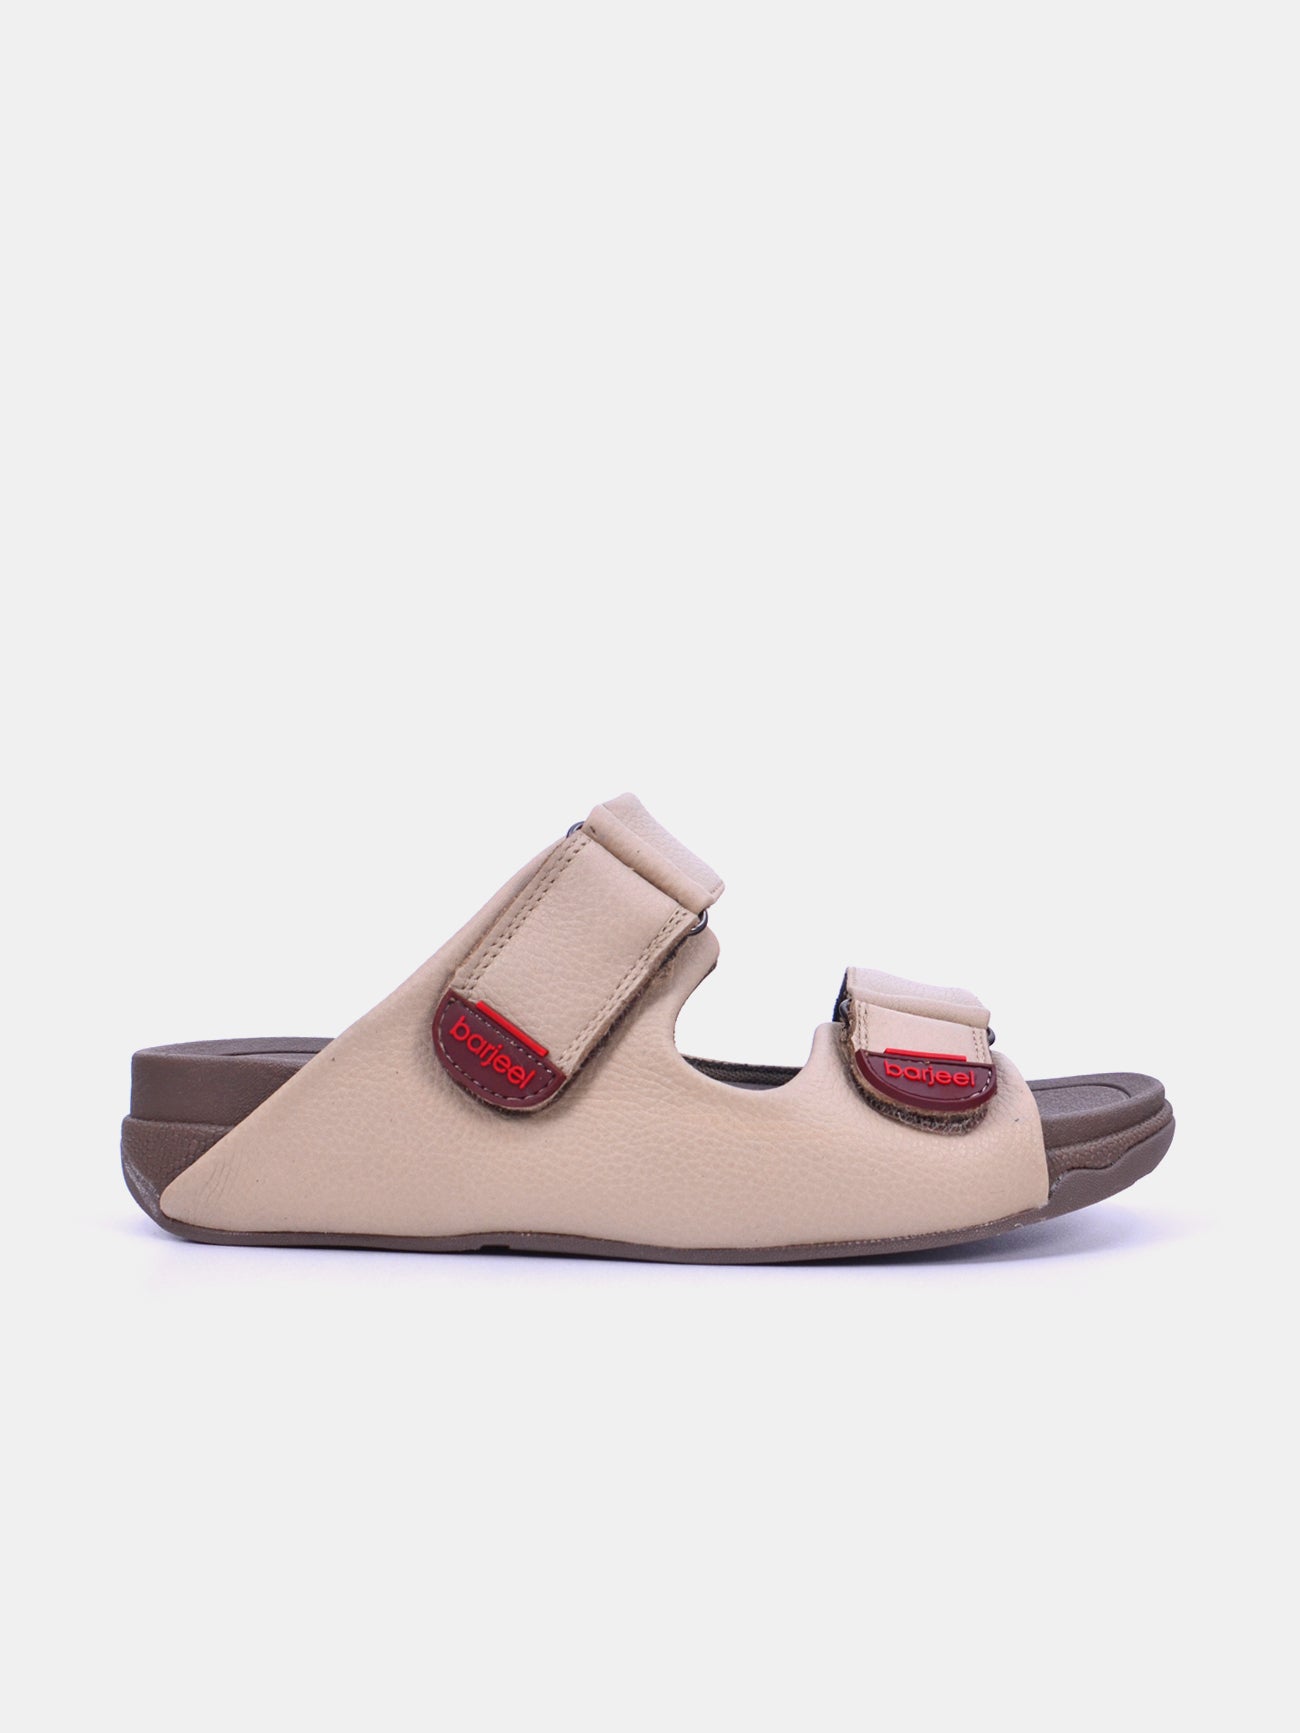 Barjeel Uno 20272 Men's Arabic Sandals #color_Beige